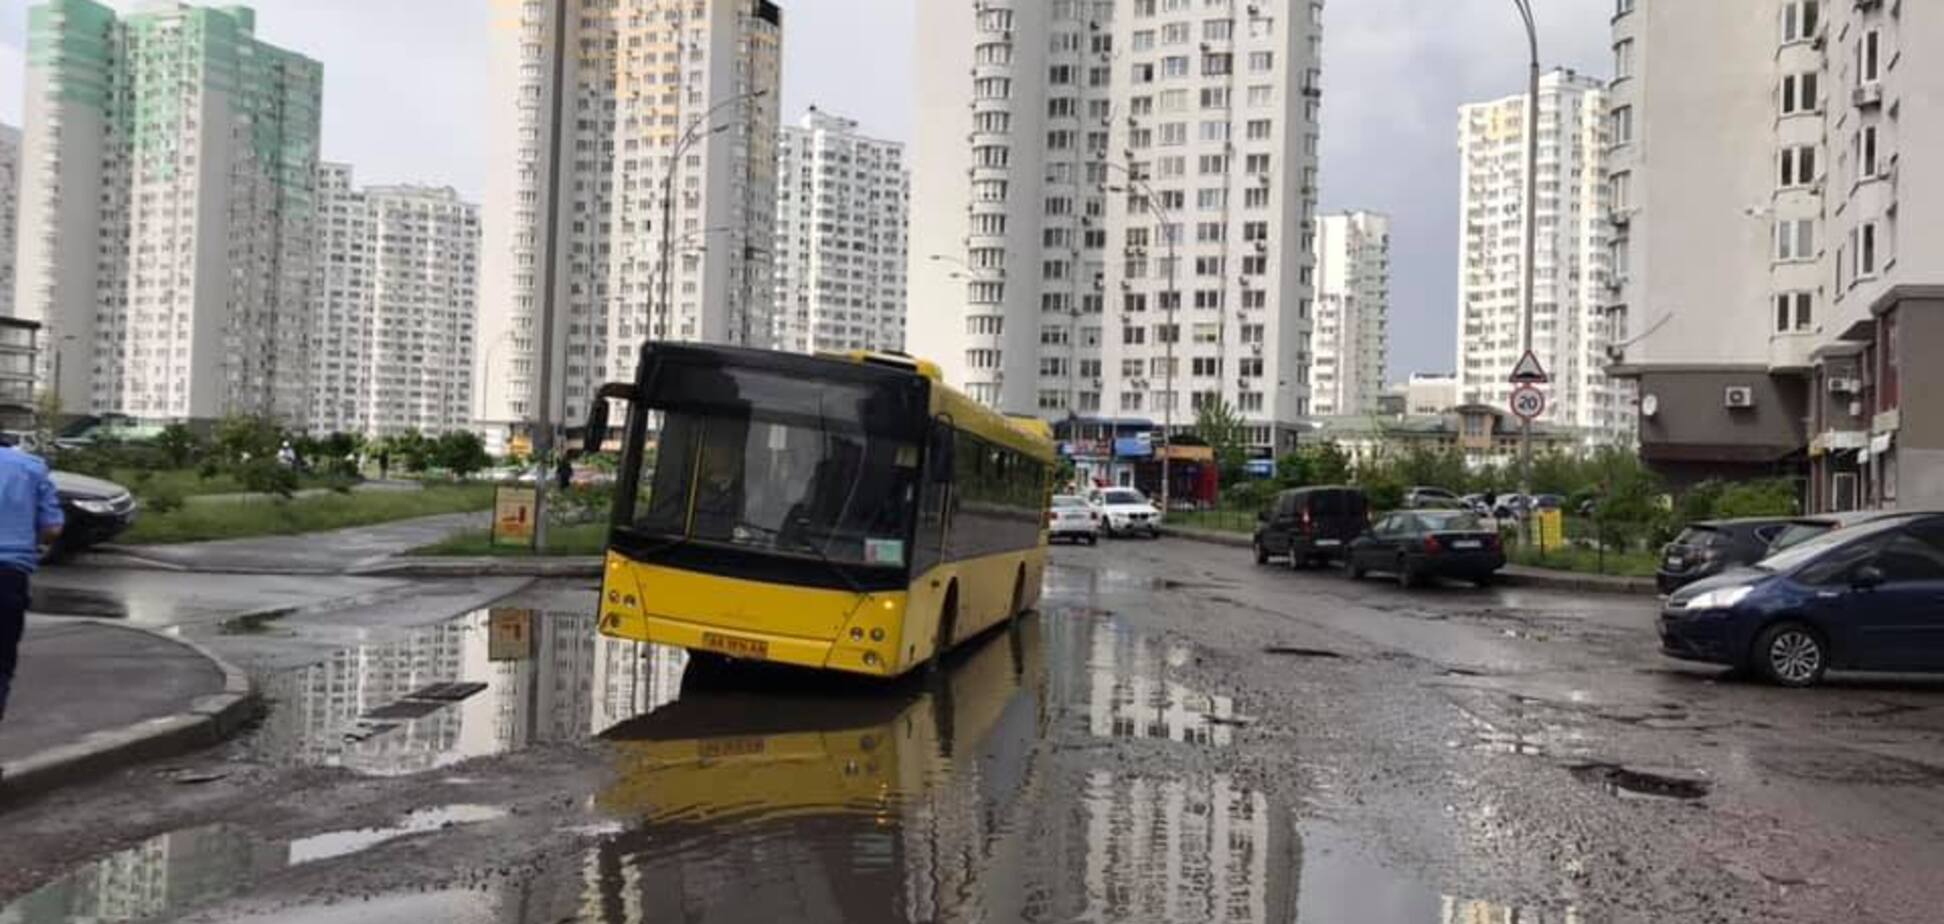 'Найгірша вулиця в місті!' У Києві в ямі посеред дороги застряг пасажирський автобус